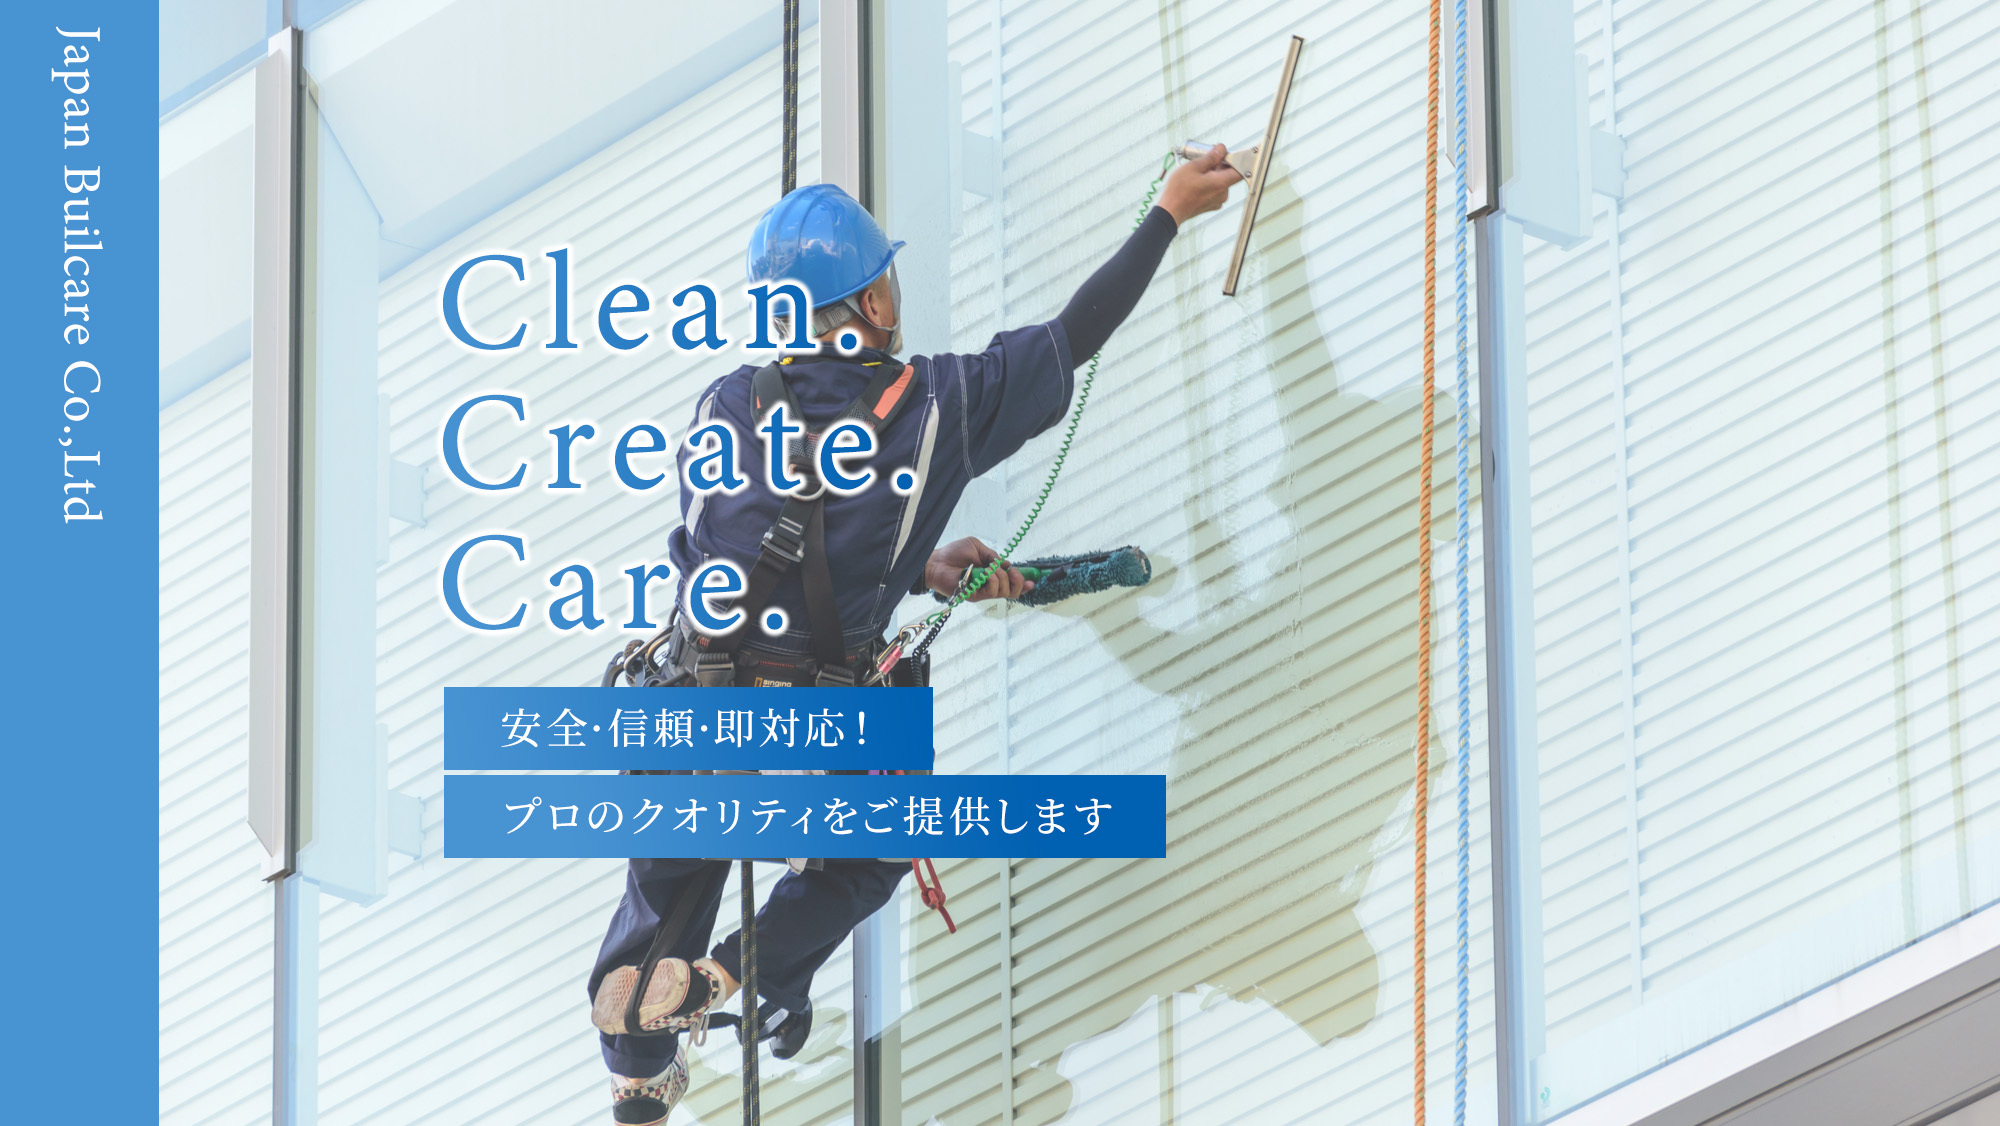 Clean. Create. Care. 